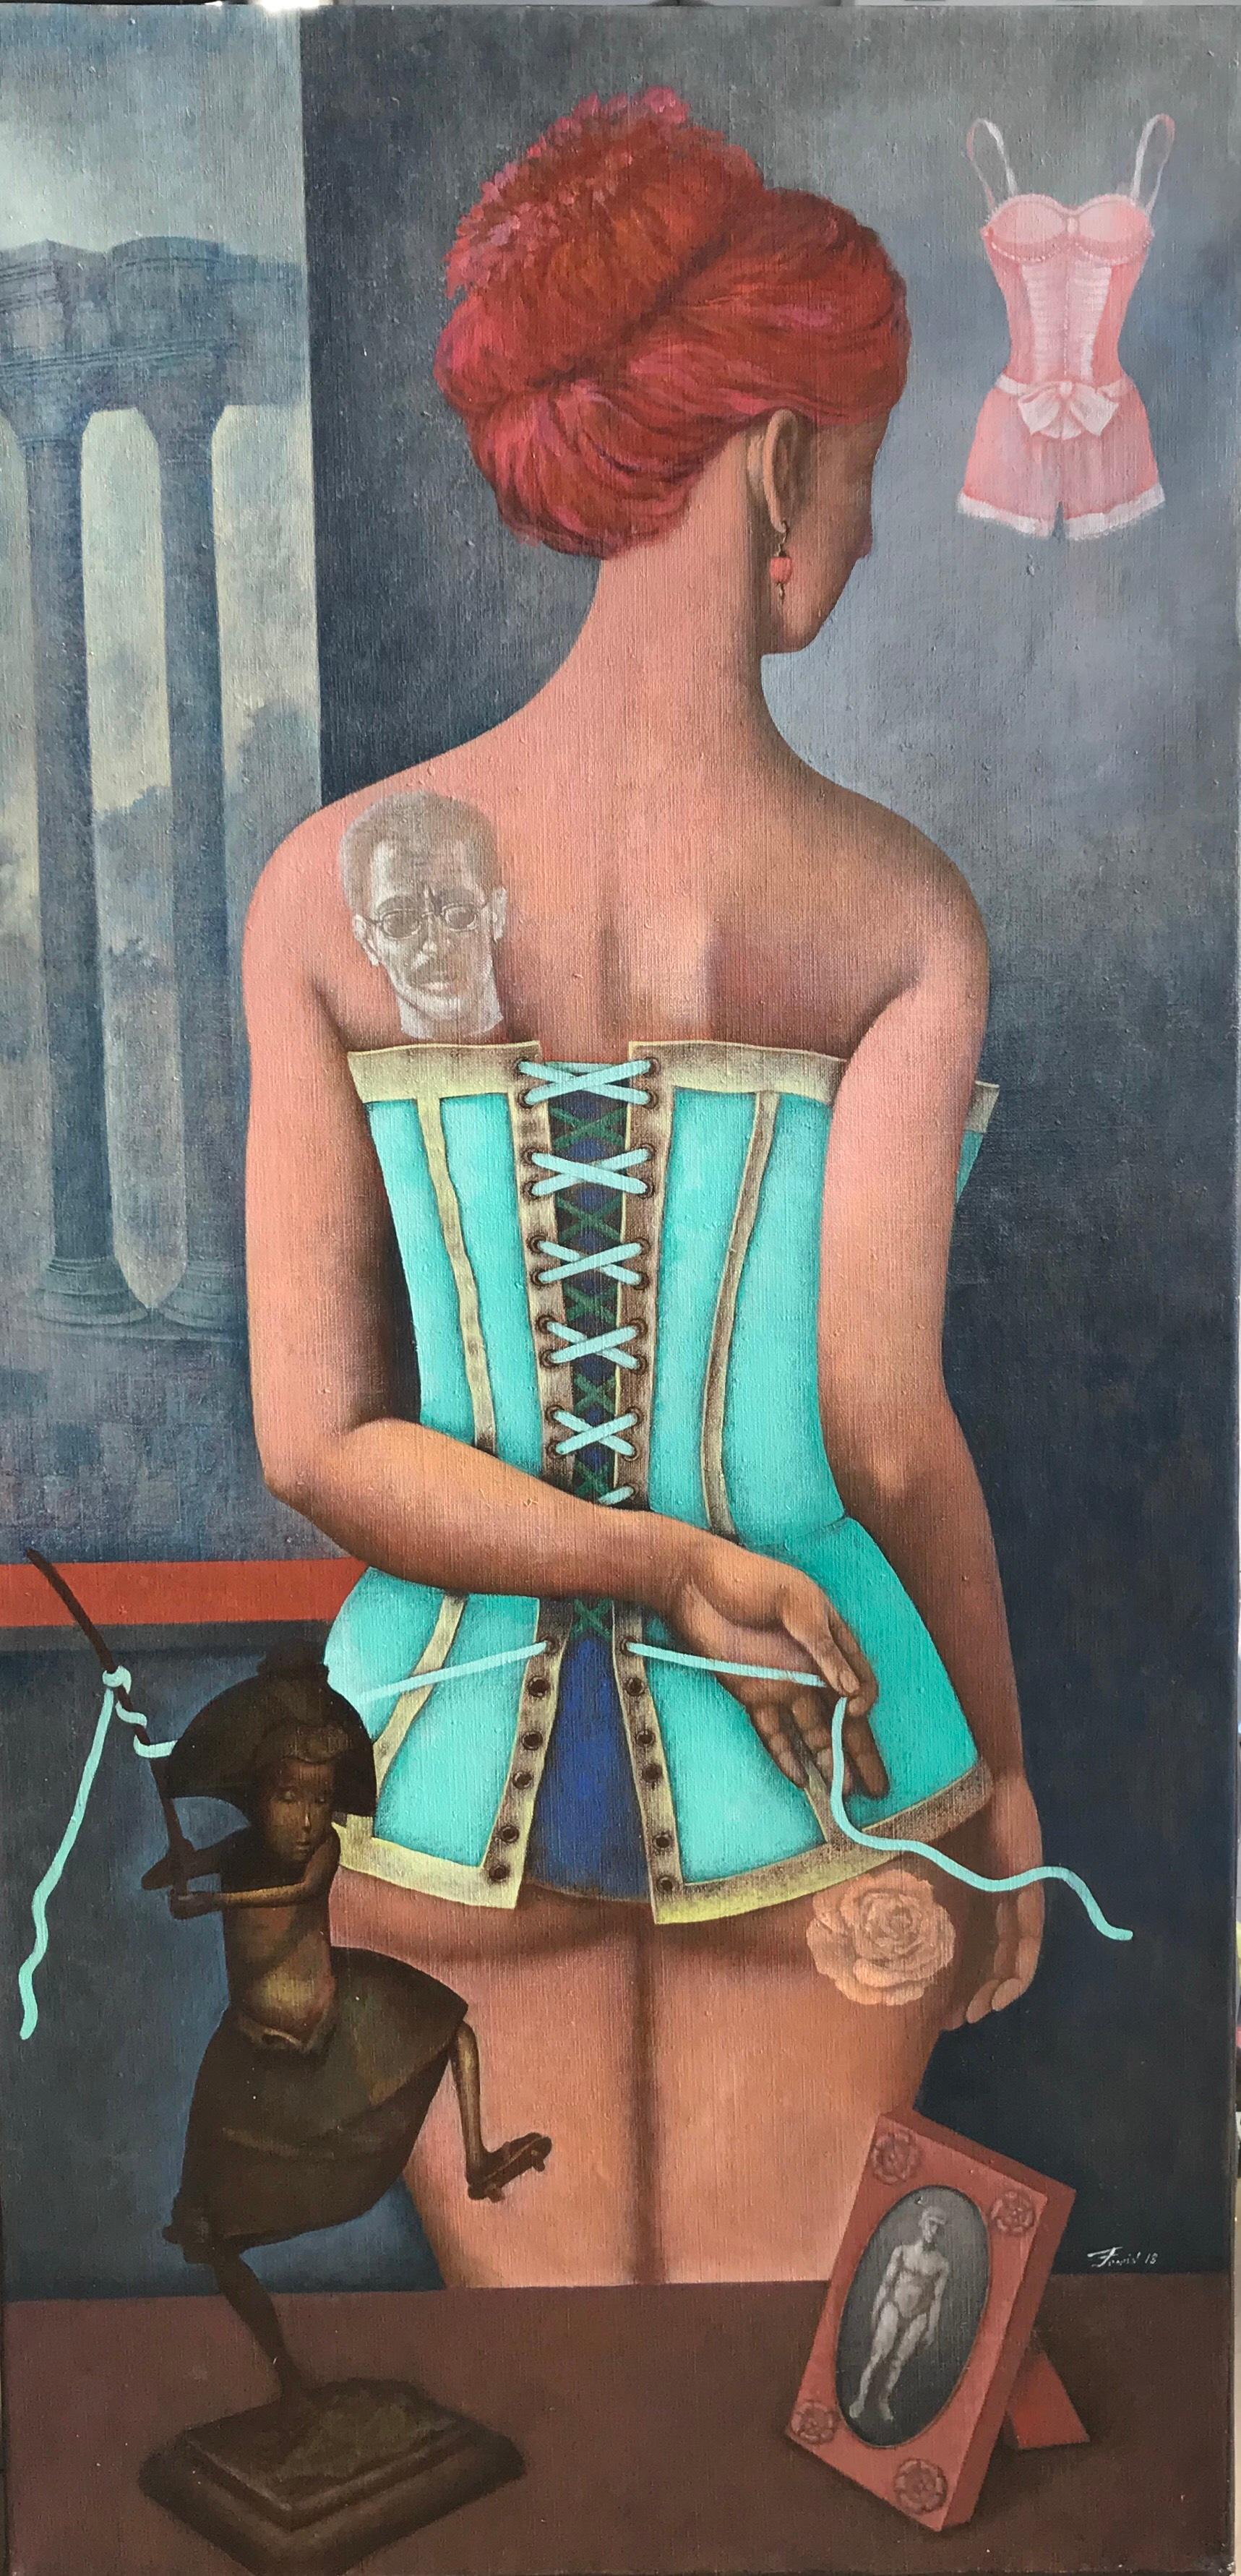 Le Corset - Une jeune fille en corset, de couleur grise, bleue, marron et turquoise